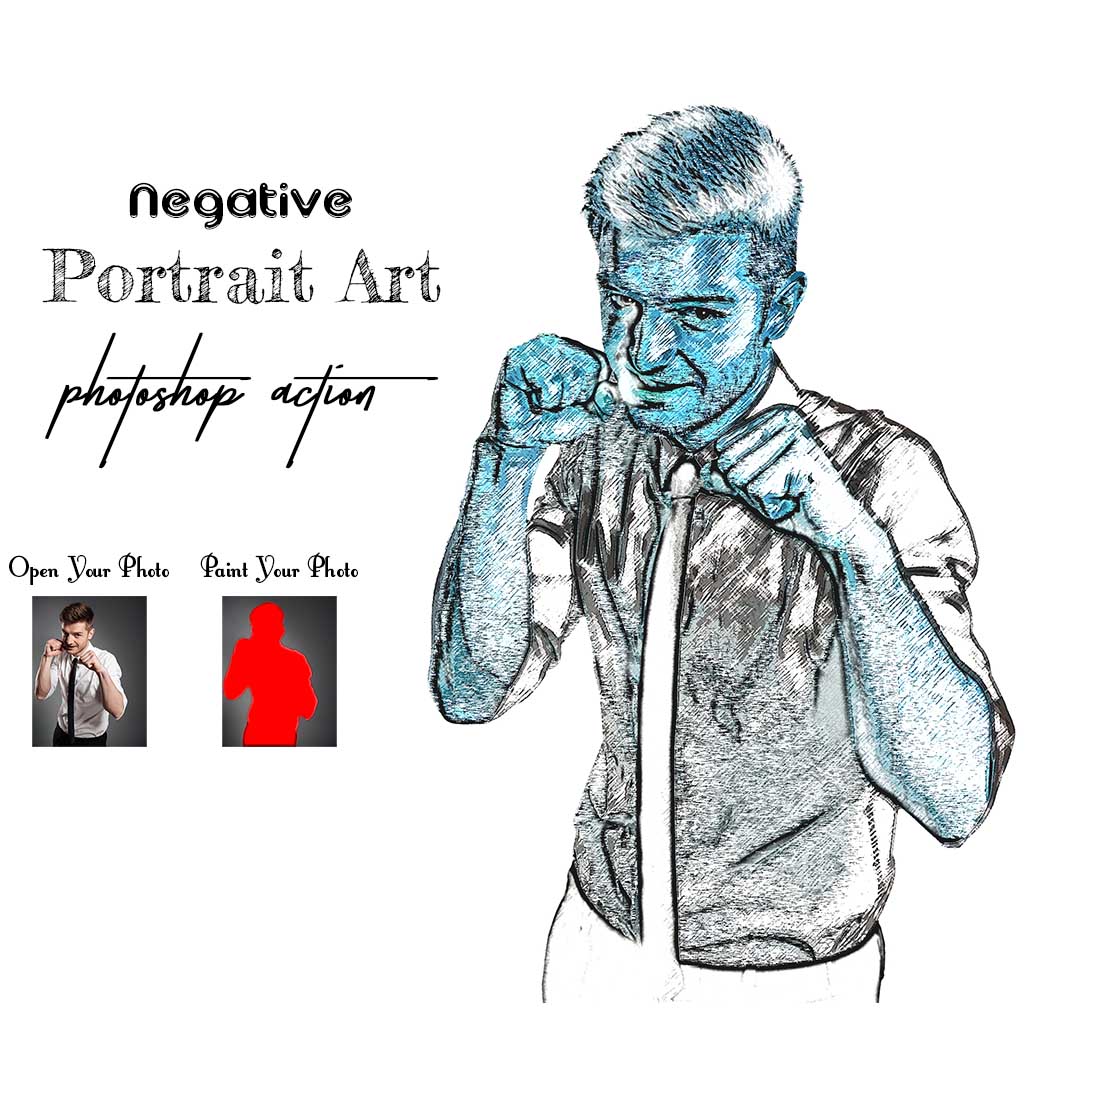 Negative Portrait Art Photoshop Action cover image.